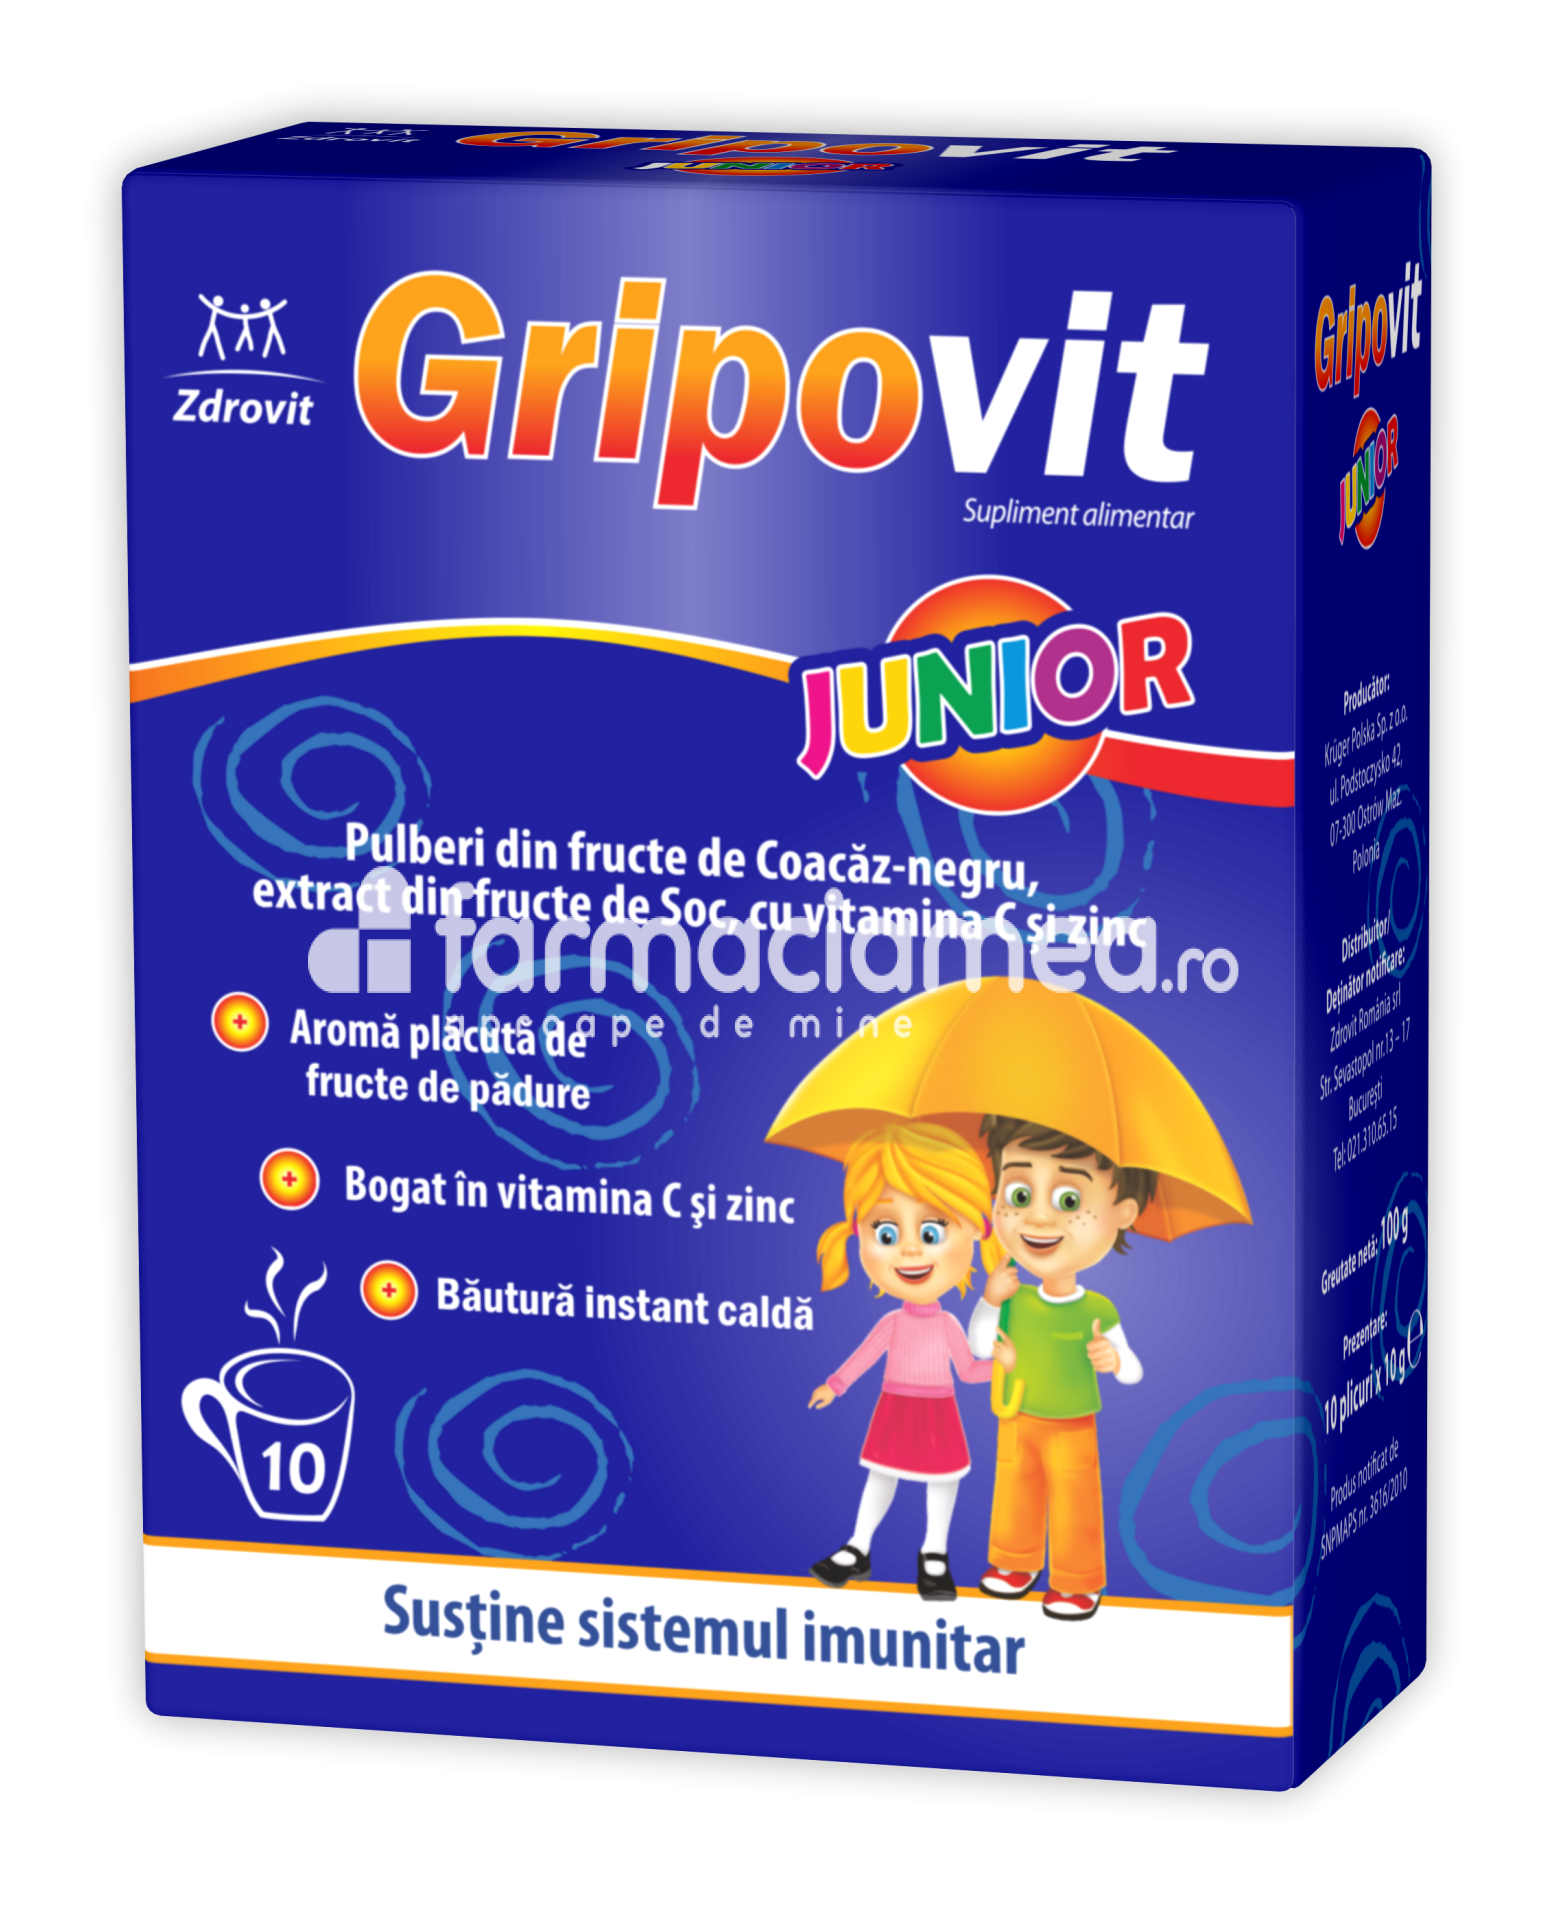 Imunitate copii - Gripovit junior, pentru sustinerea imunitatii, 10 plicuri, Zdrovit, farmaciamea.ro